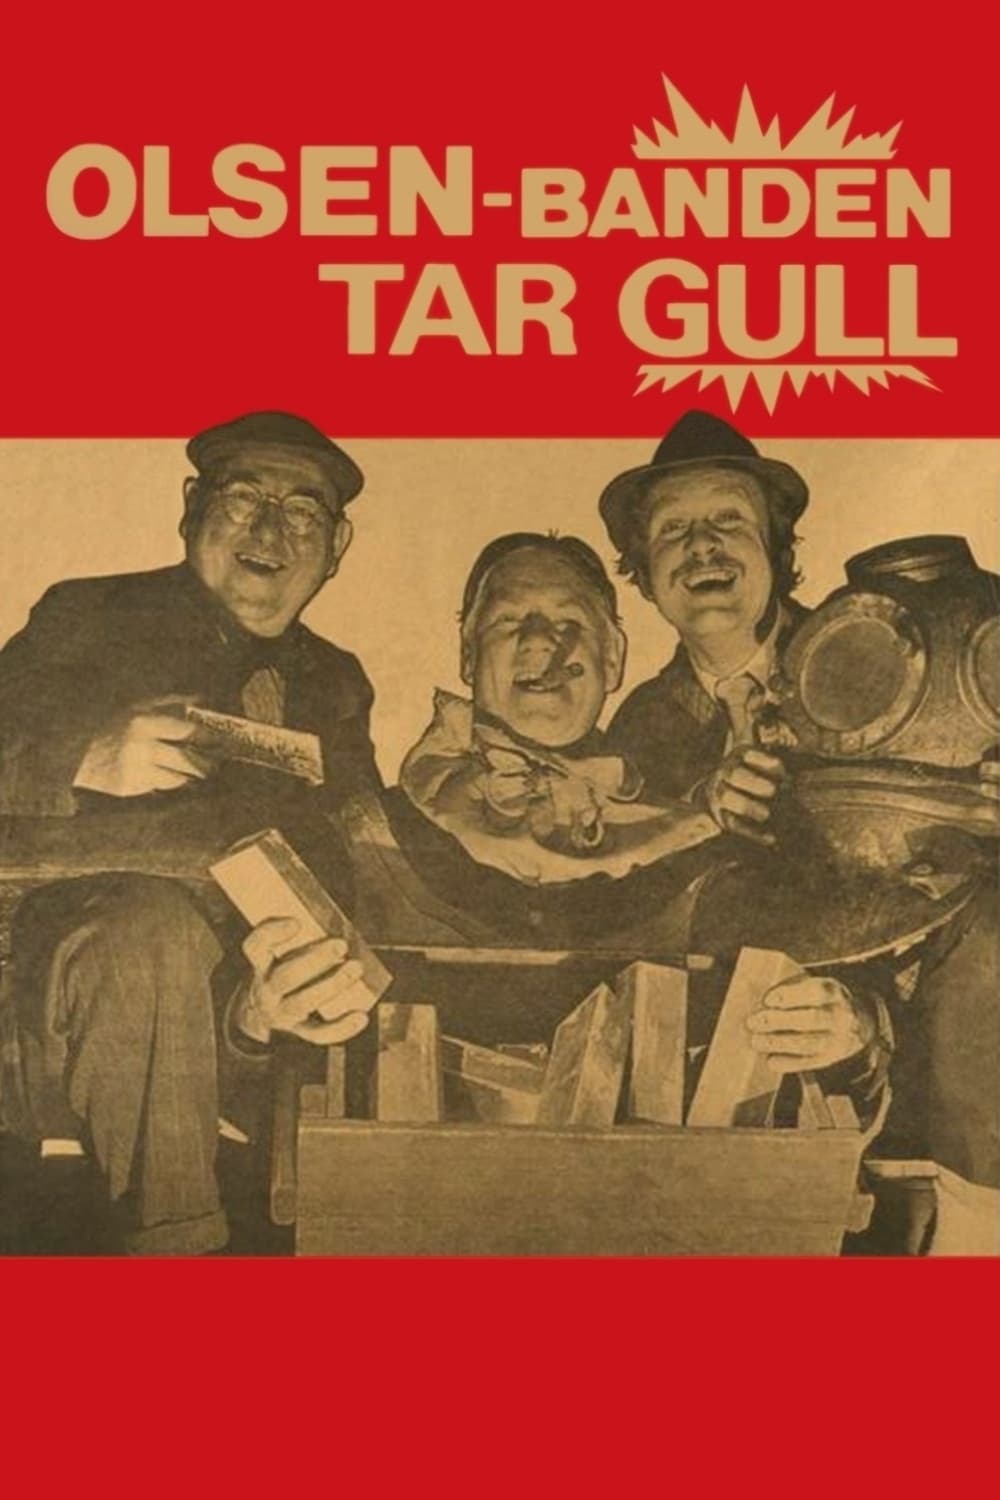 Olsenbanden tar gull (1972)